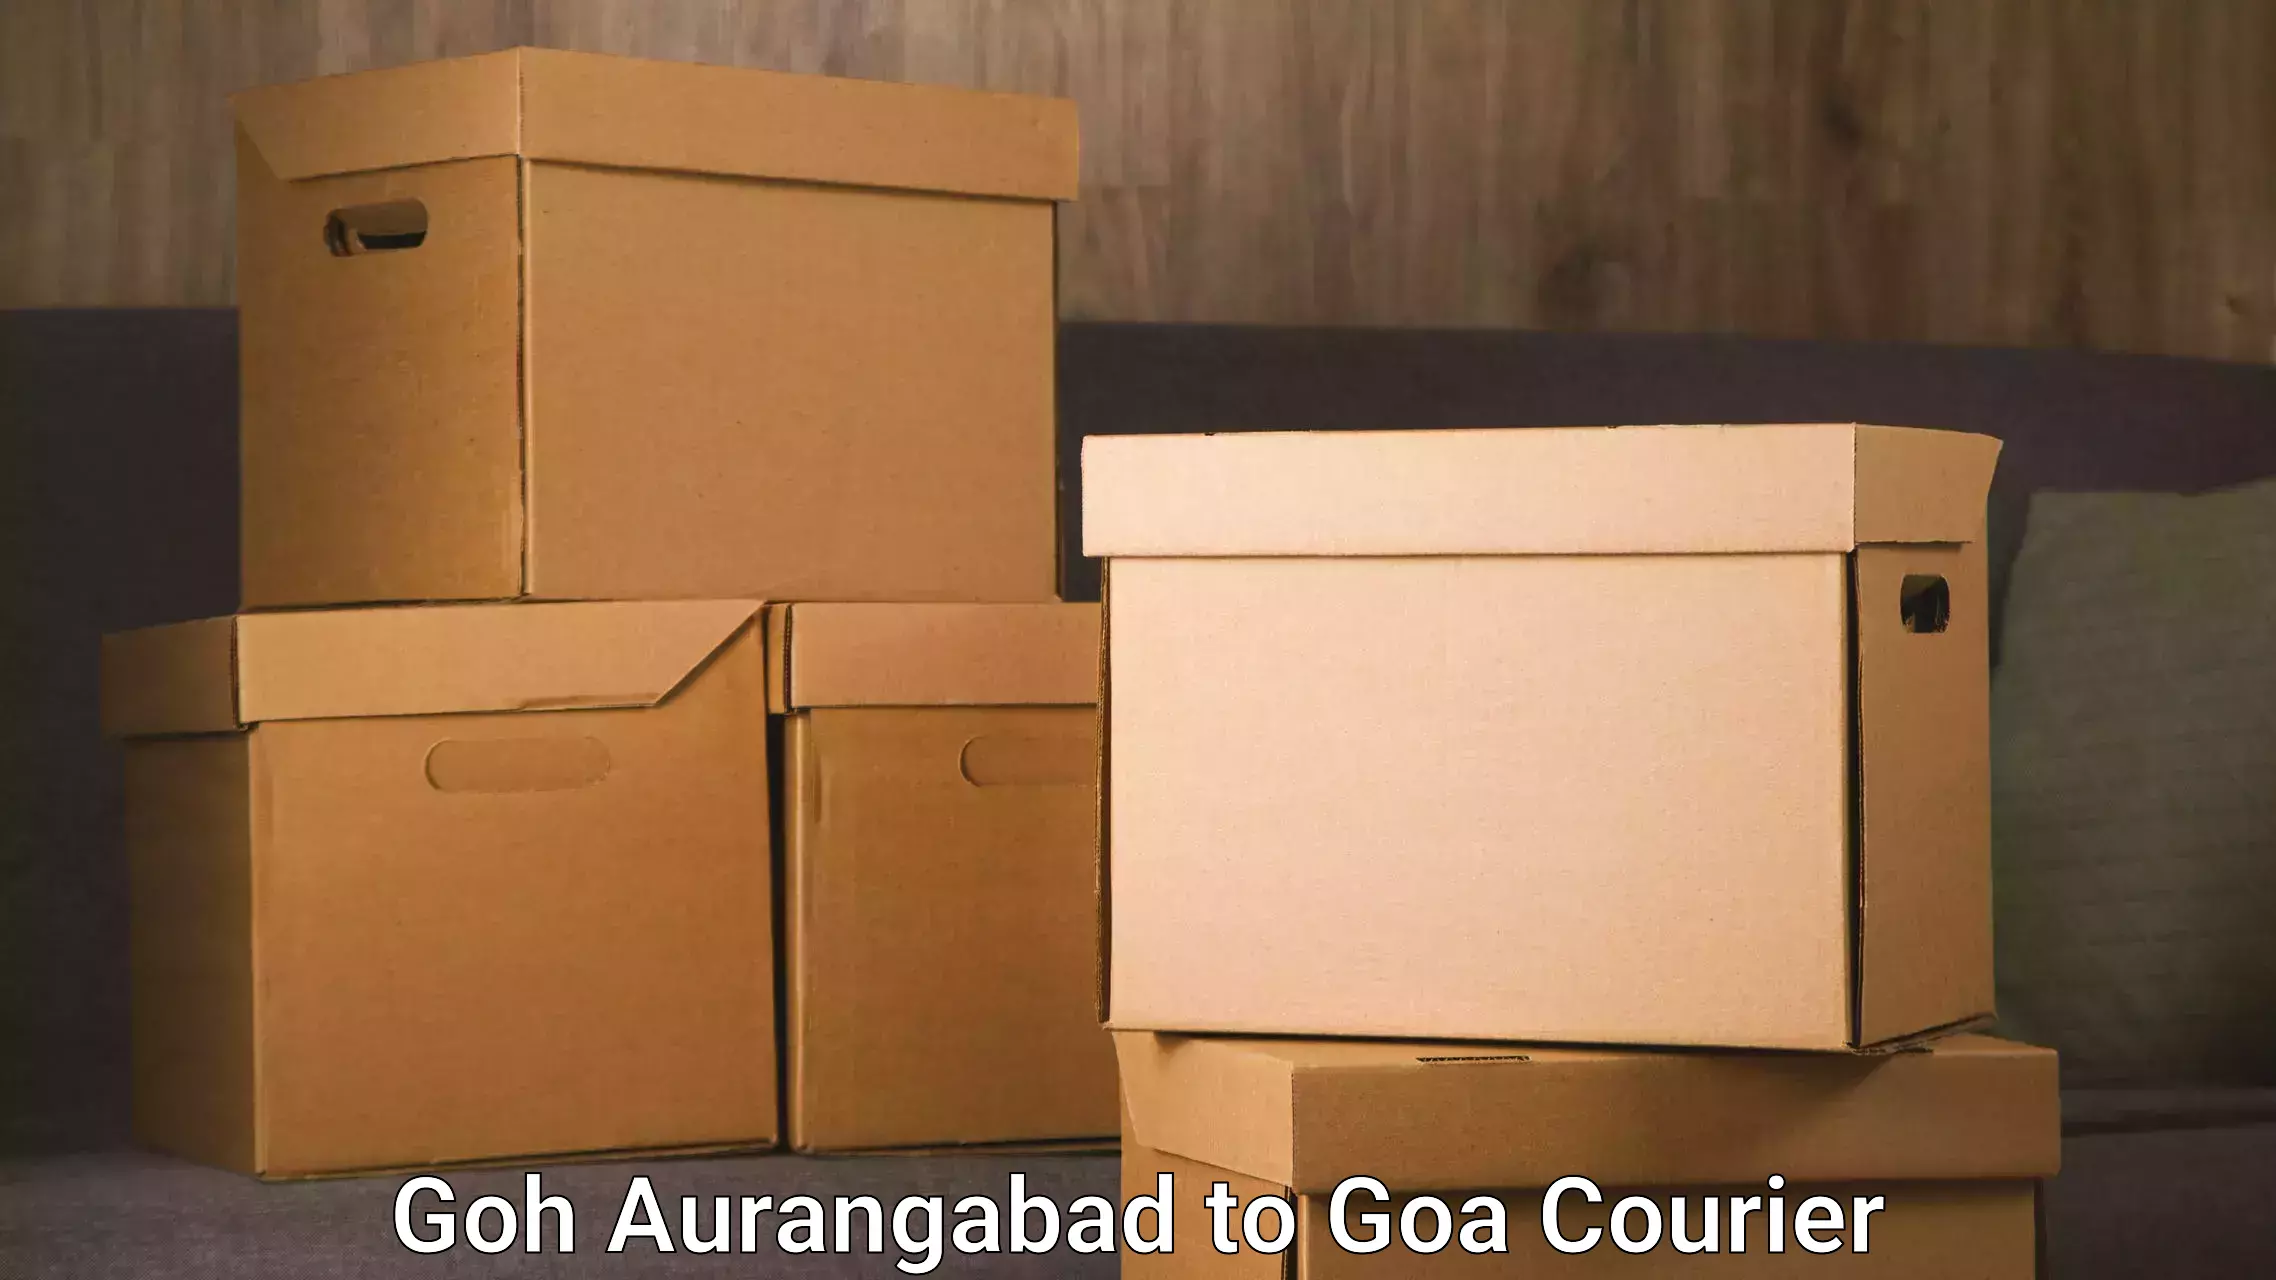 Personalized furniture moving Goh Aurangabad to South Goa